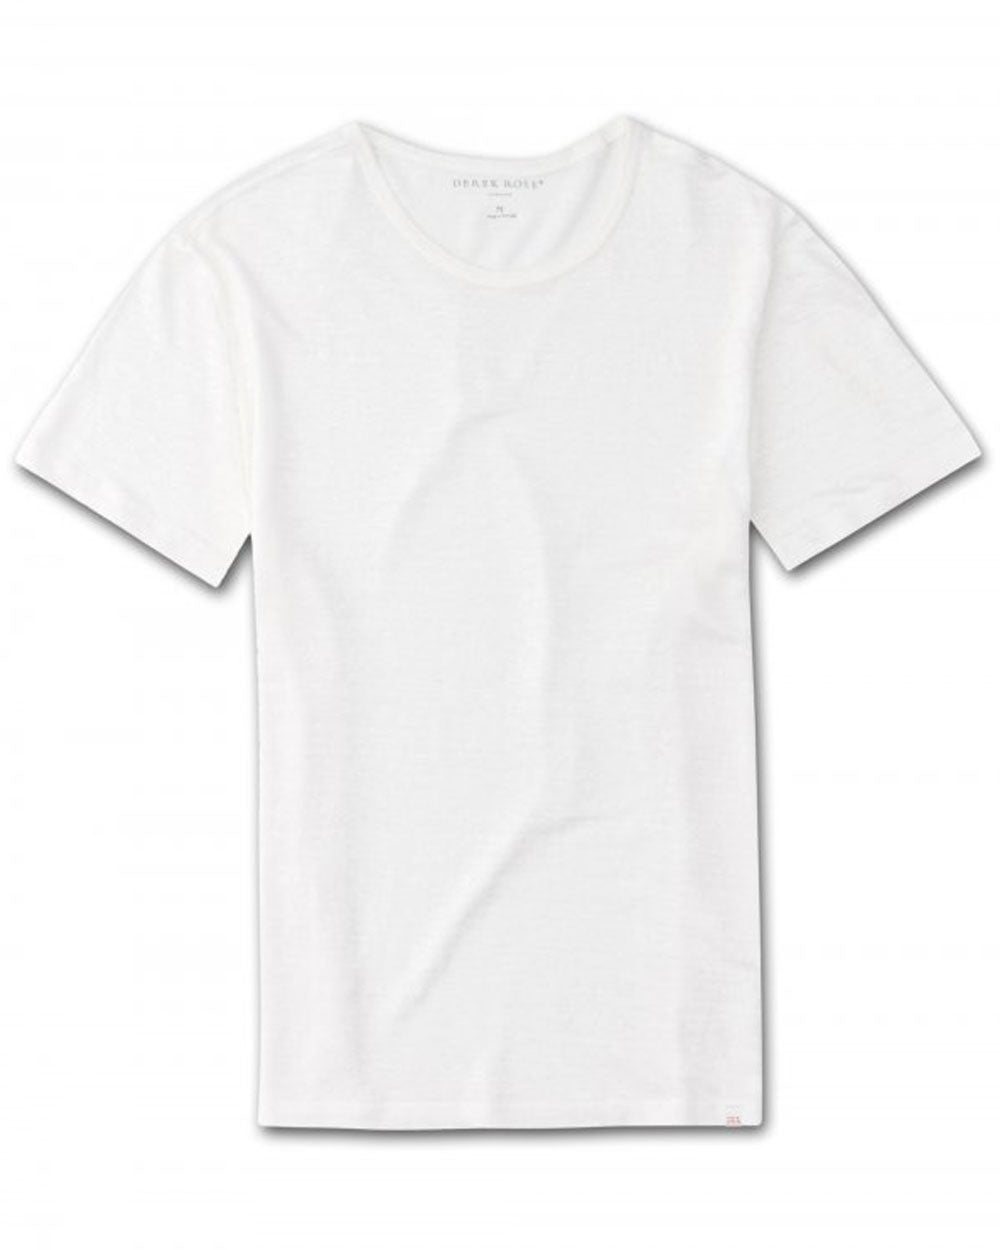 Jordan 1 Linen Short Sleeve T-Shirt in White